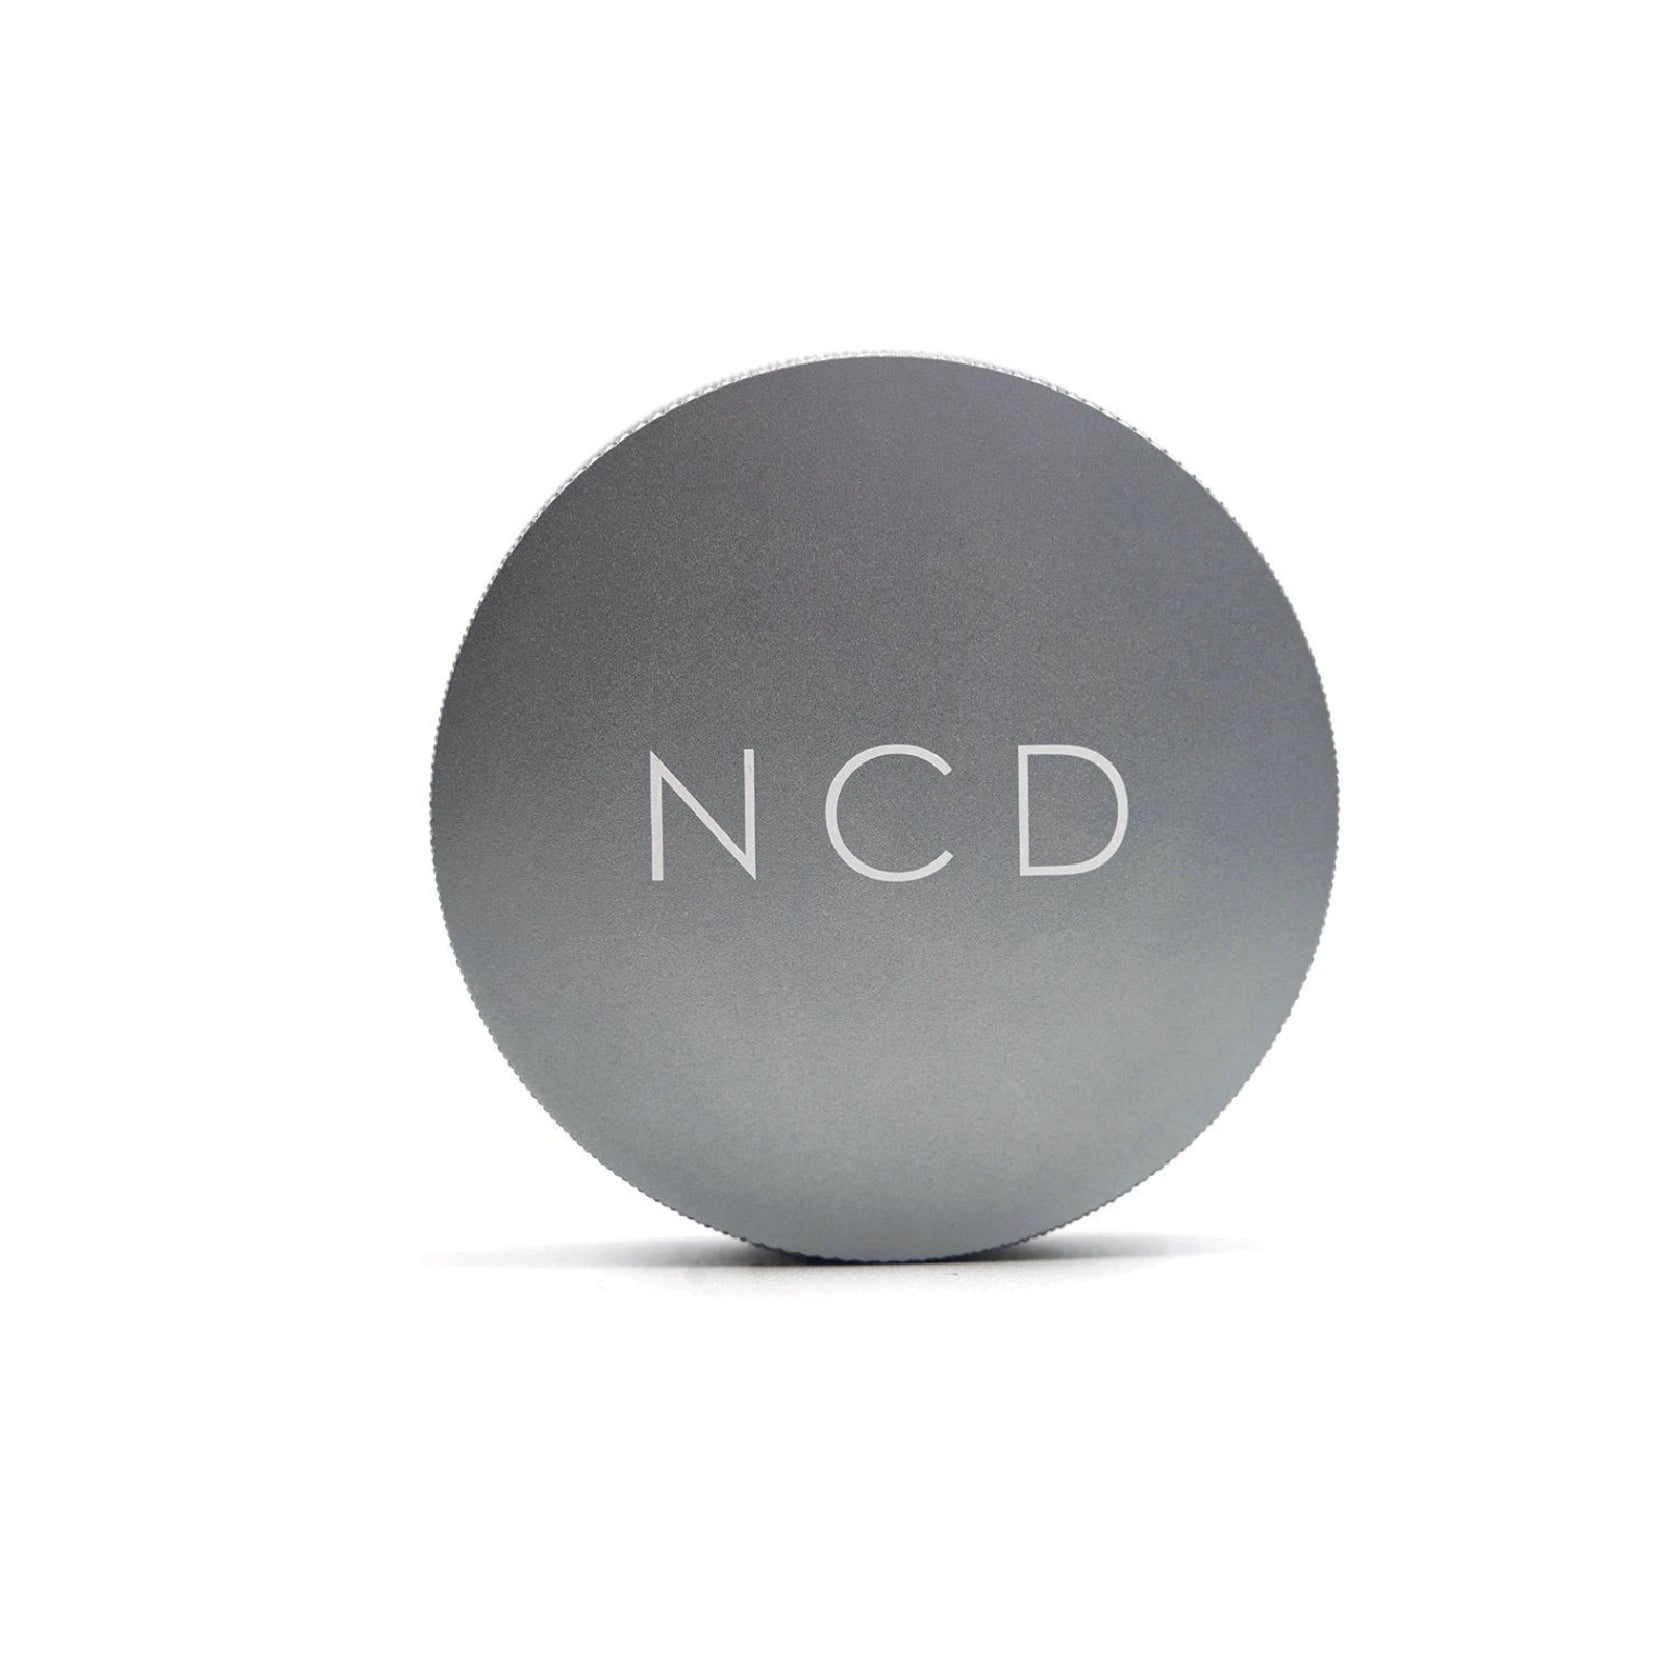 Nucleas Coffee Distributor NCD 58.5mm